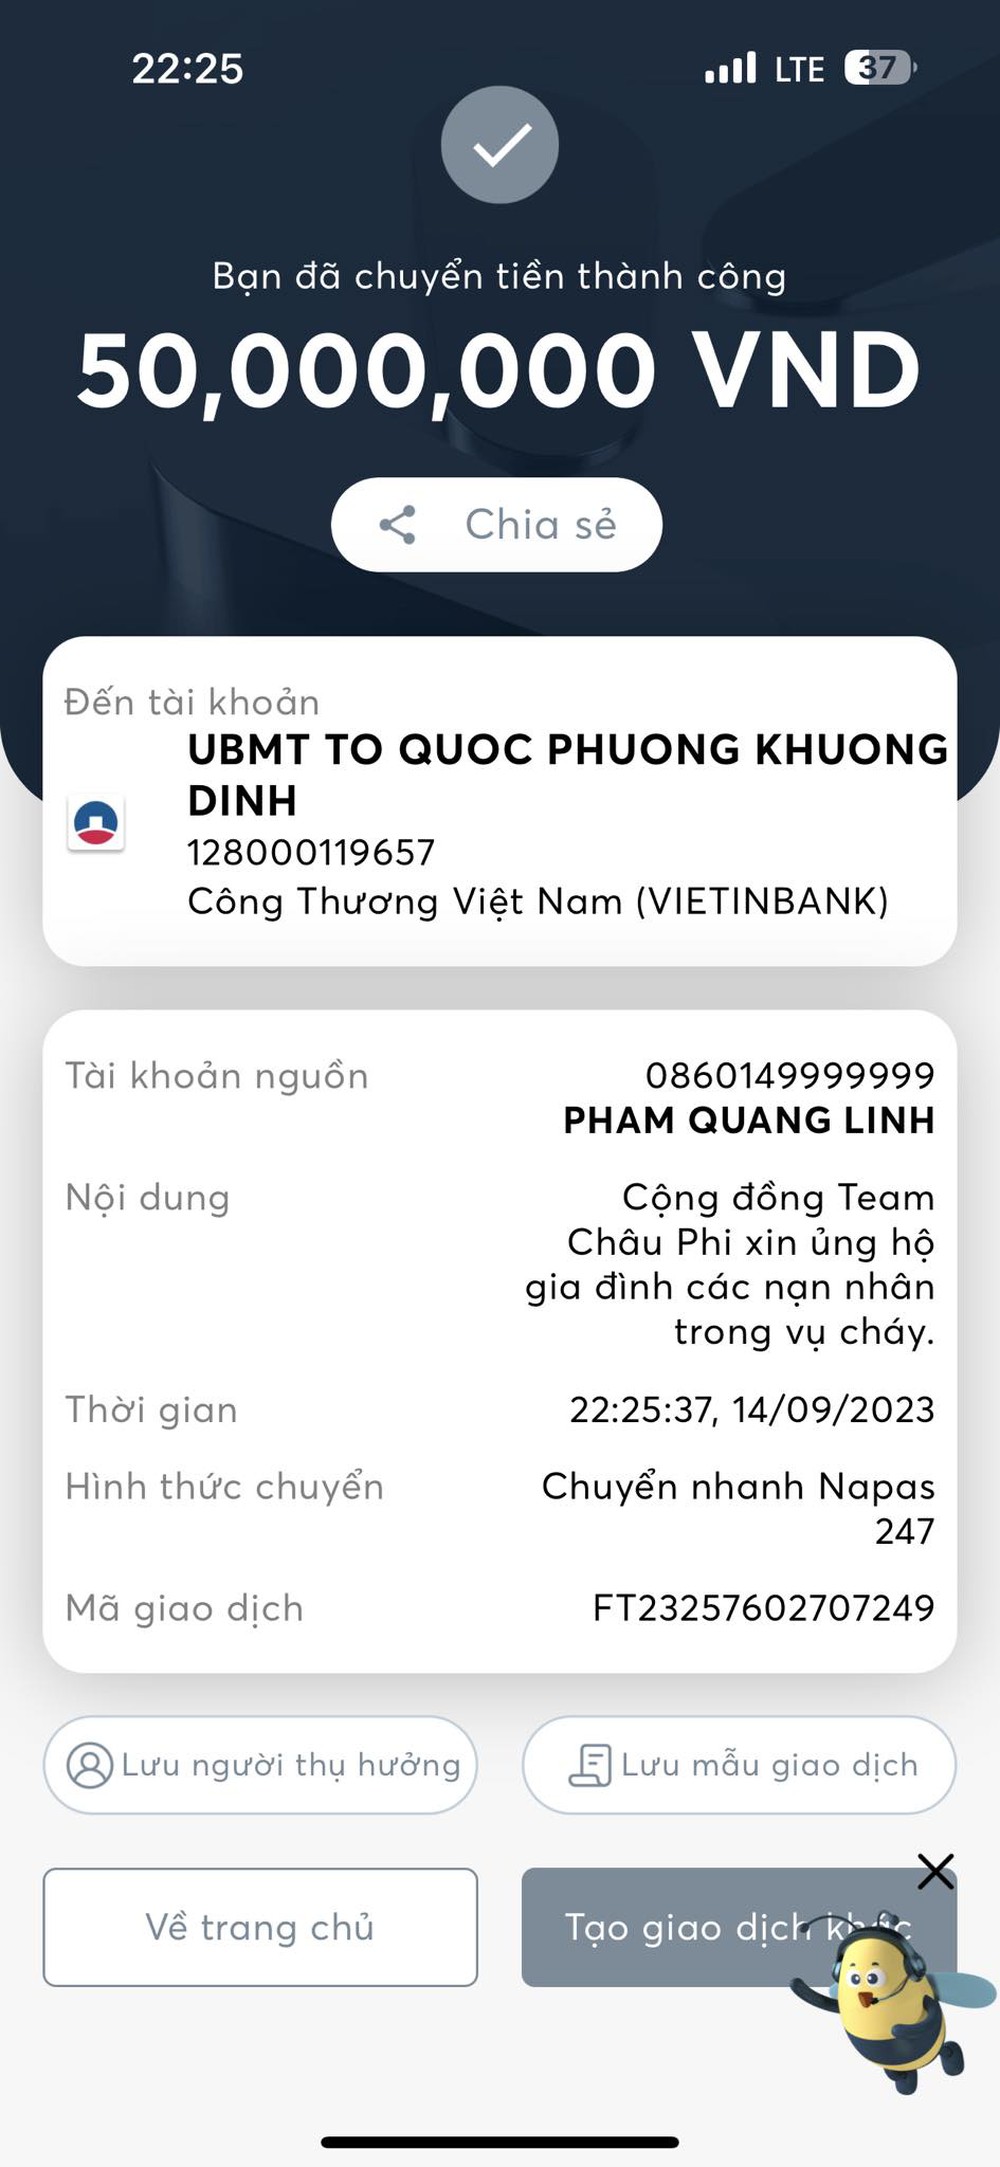 Quang Linh Vlog ủng hộ số tiền lớn cho nạn nhân vụ cháy chung cư mini, một điểm lạ khiến dân mạng nghi vấn - Ảnh 1.